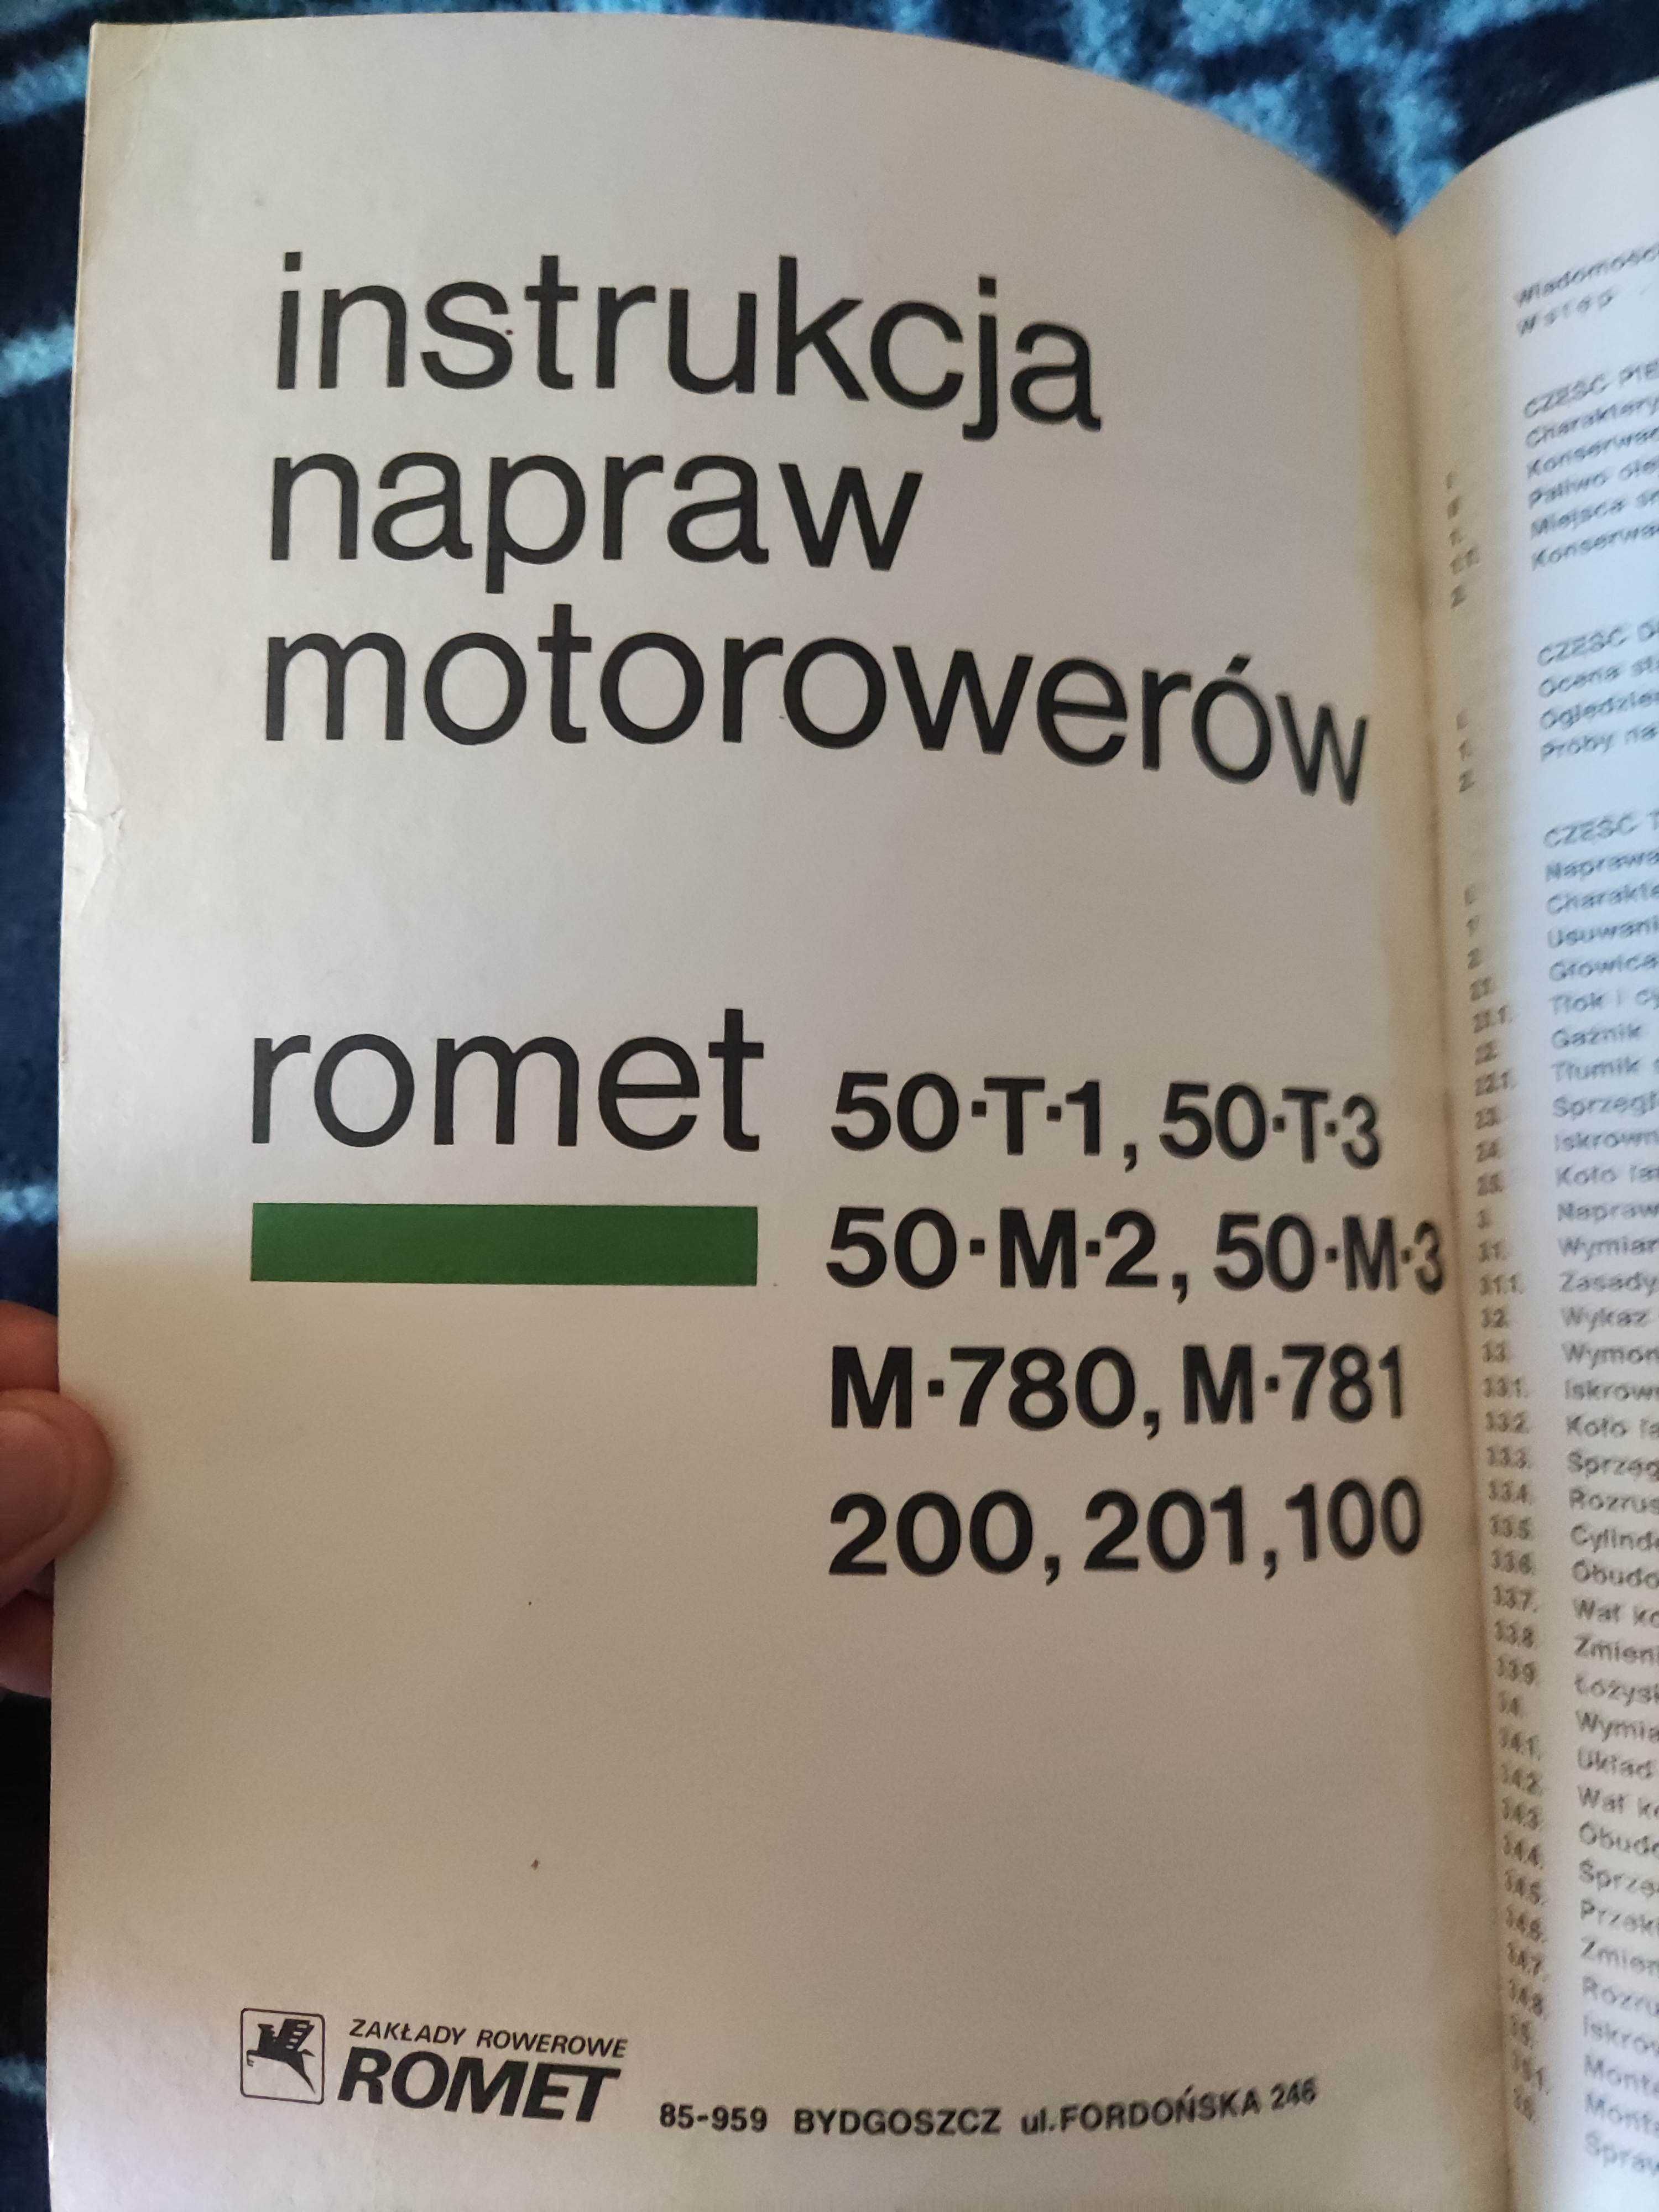 Instrukcja Napraw Motorowerów Romet orginał